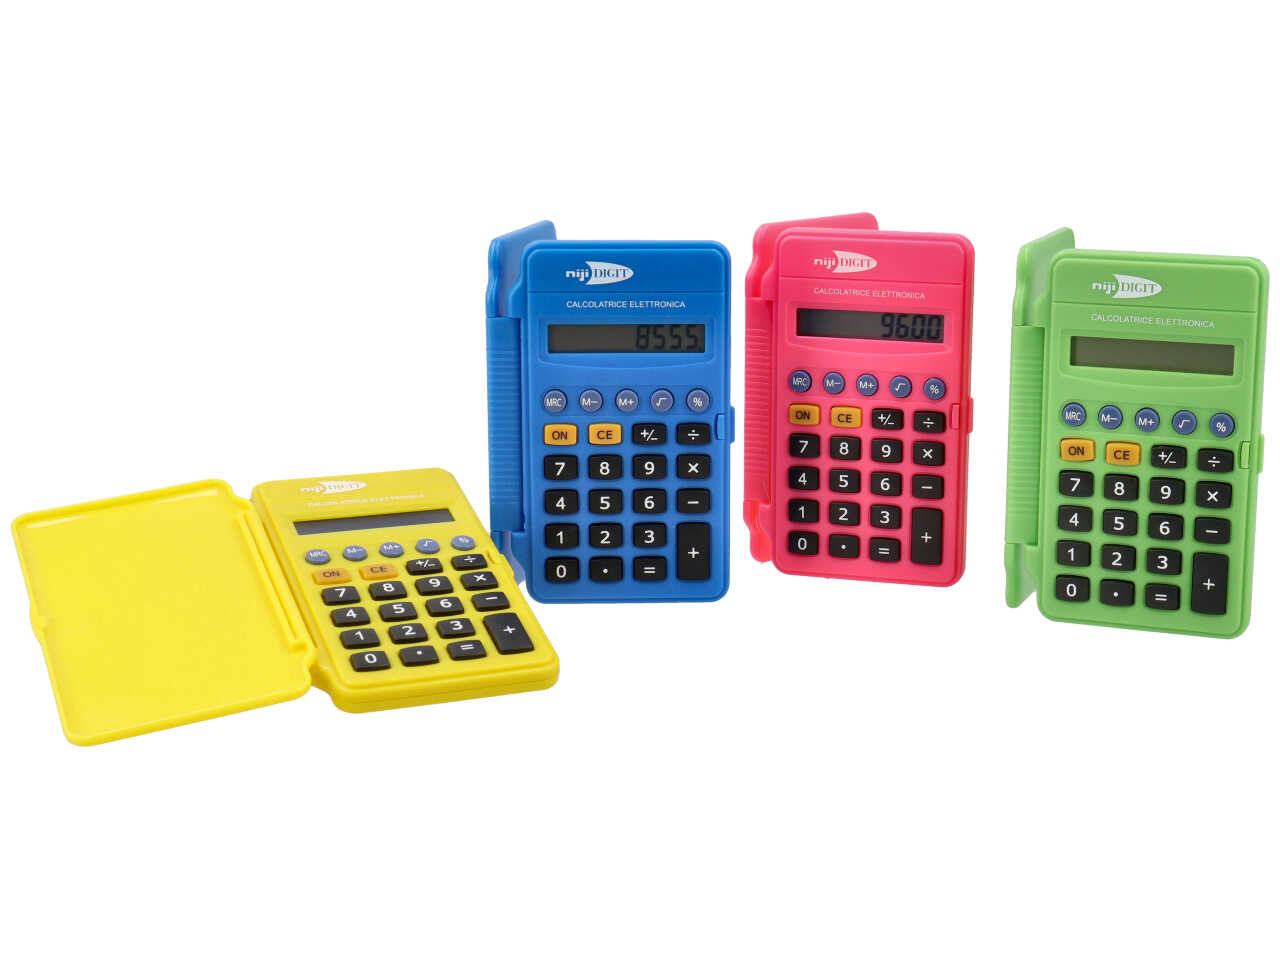 Calcolatrice 8 cifre fluo tascabile in 4 colori fluo con sportellino, a batteria 6,5x10,5 cm - Niji Digit